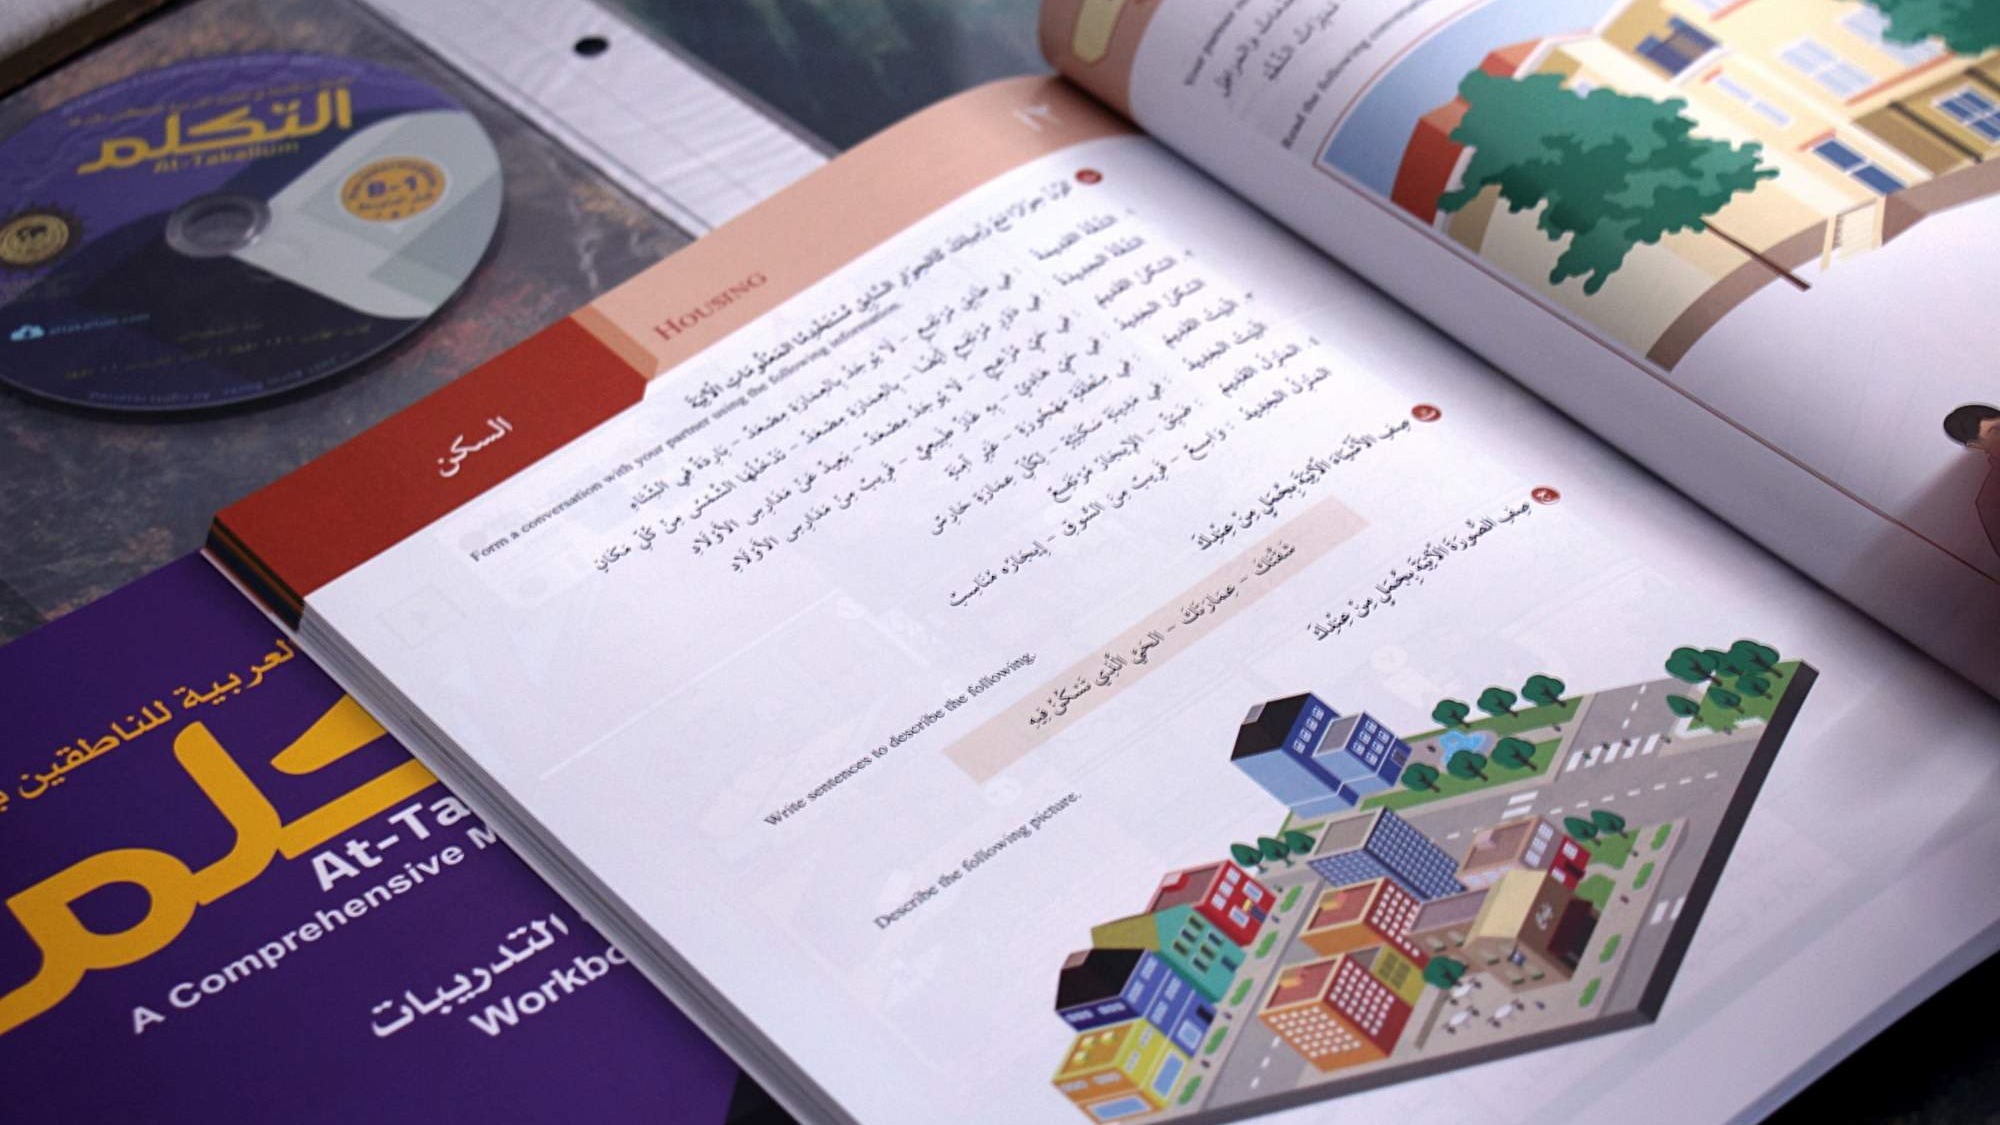 Egipat donirao udžbenike za učenje arapskog jezika za srednje škole